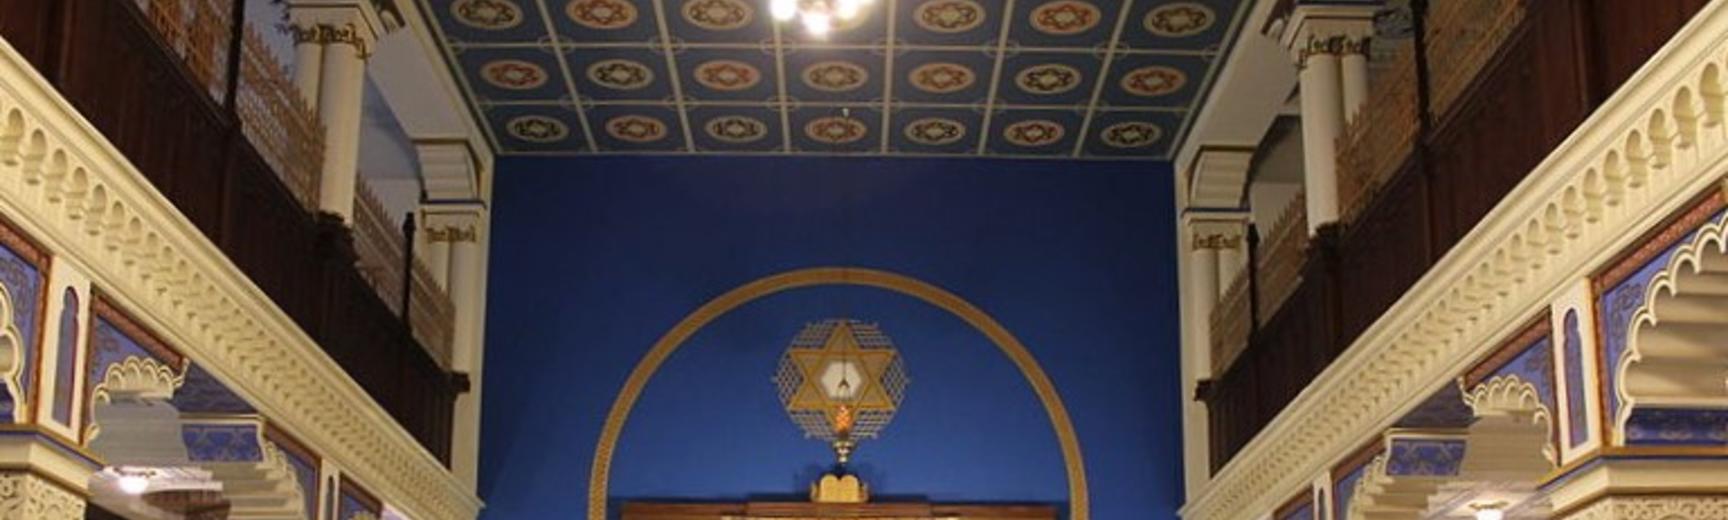 leipzig synagogue